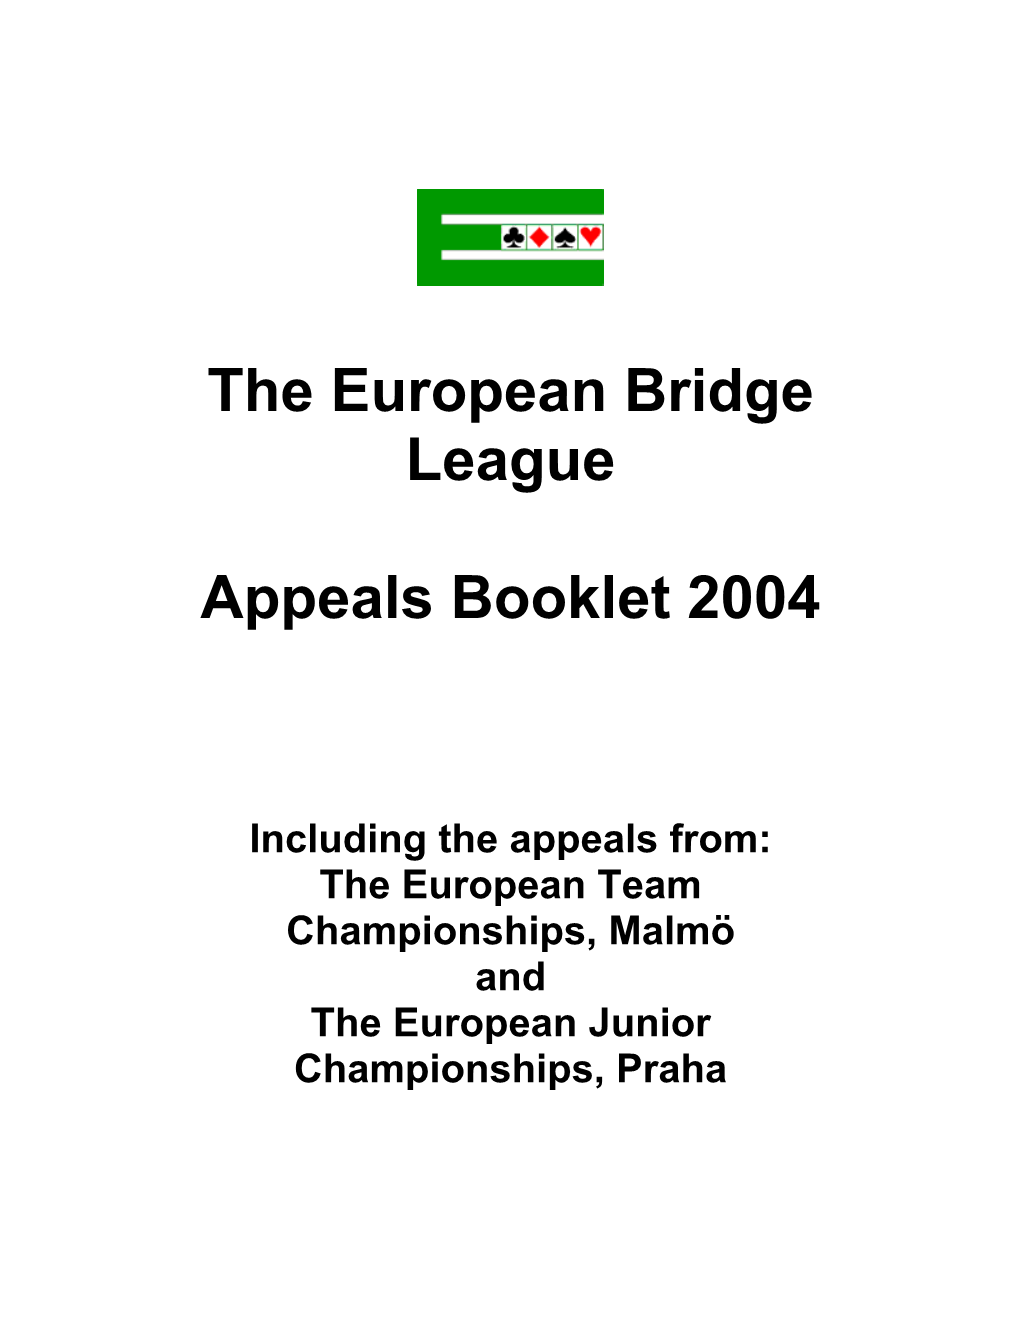 The European Bridge League Appeals Booklet 2004